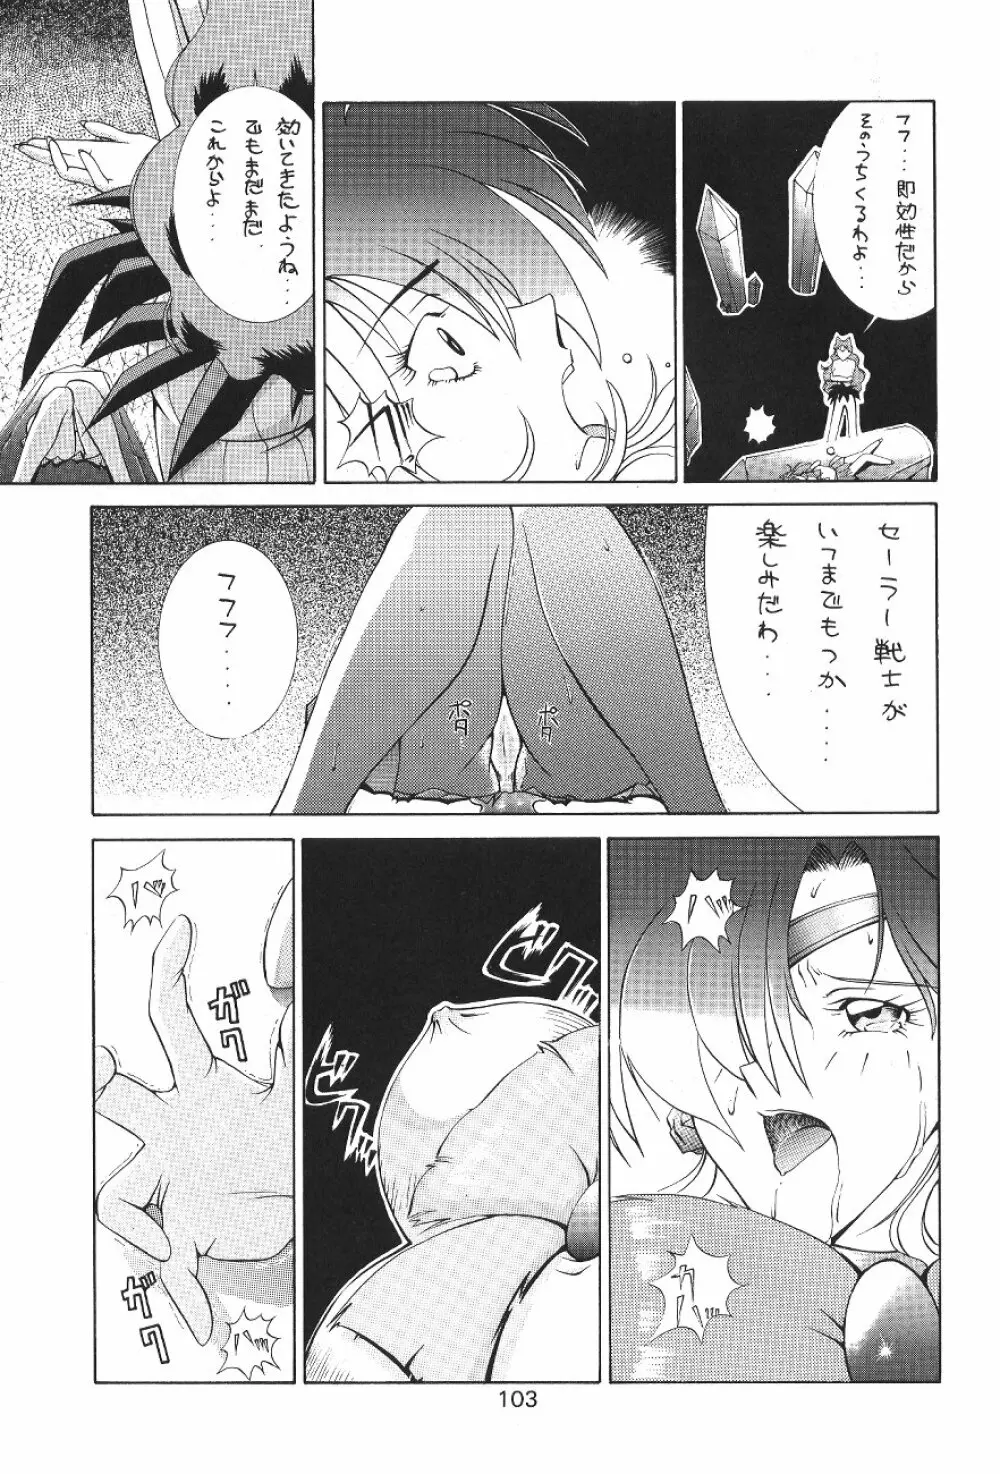 KATZE 7 上巻 - page104